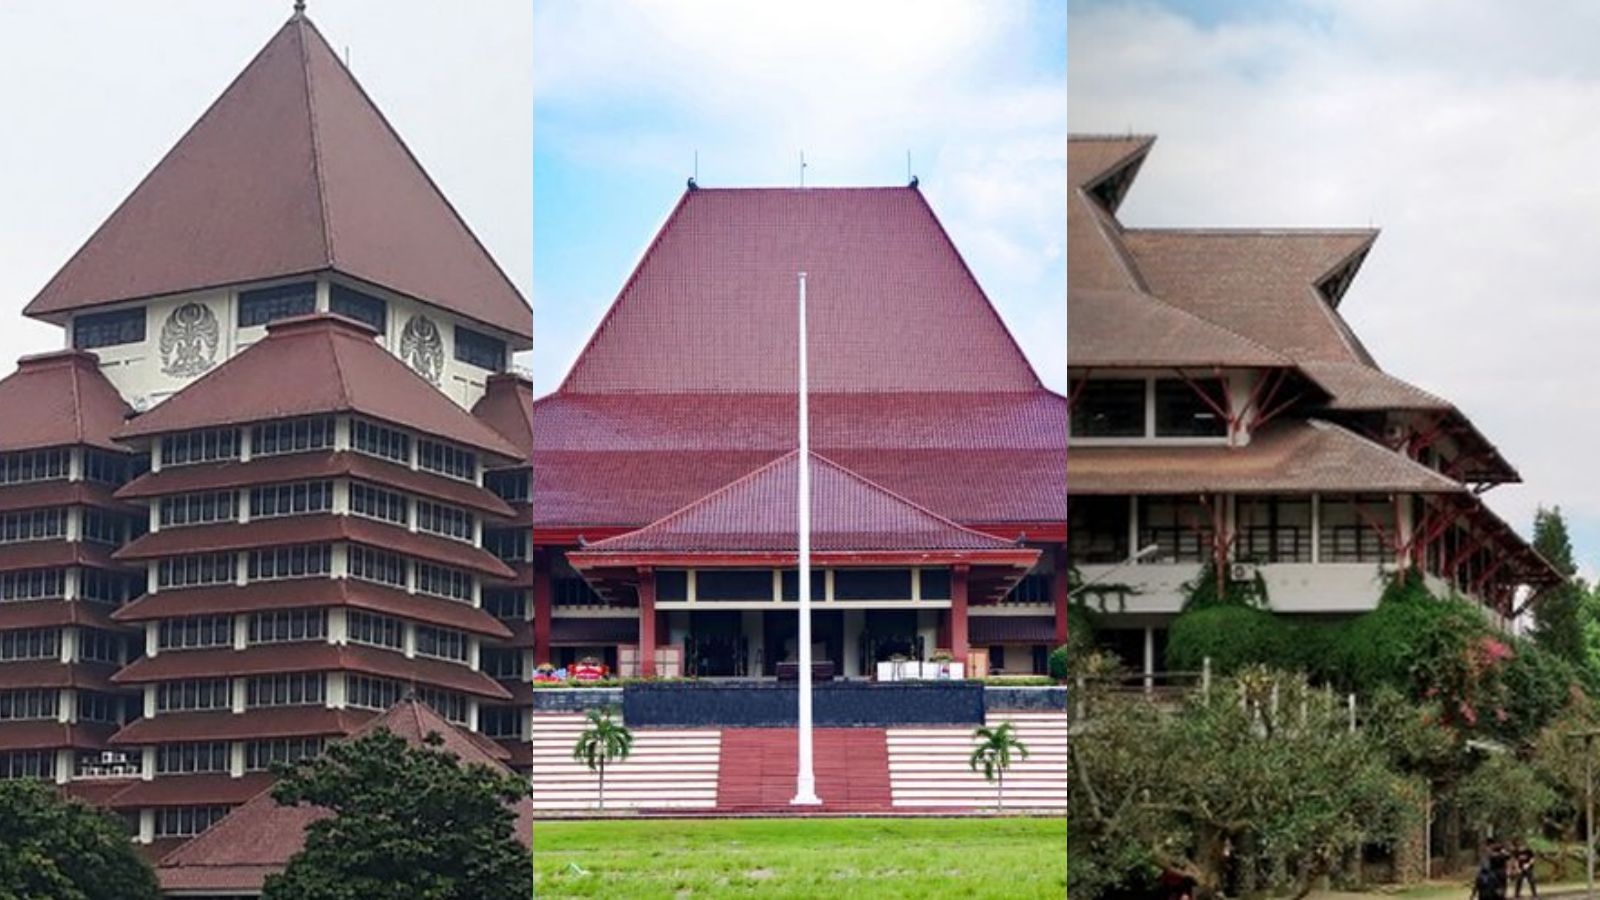 Bingung Dengan Pilihan Universitas, Berikut Daftar Universitas Favorit di Indonesia